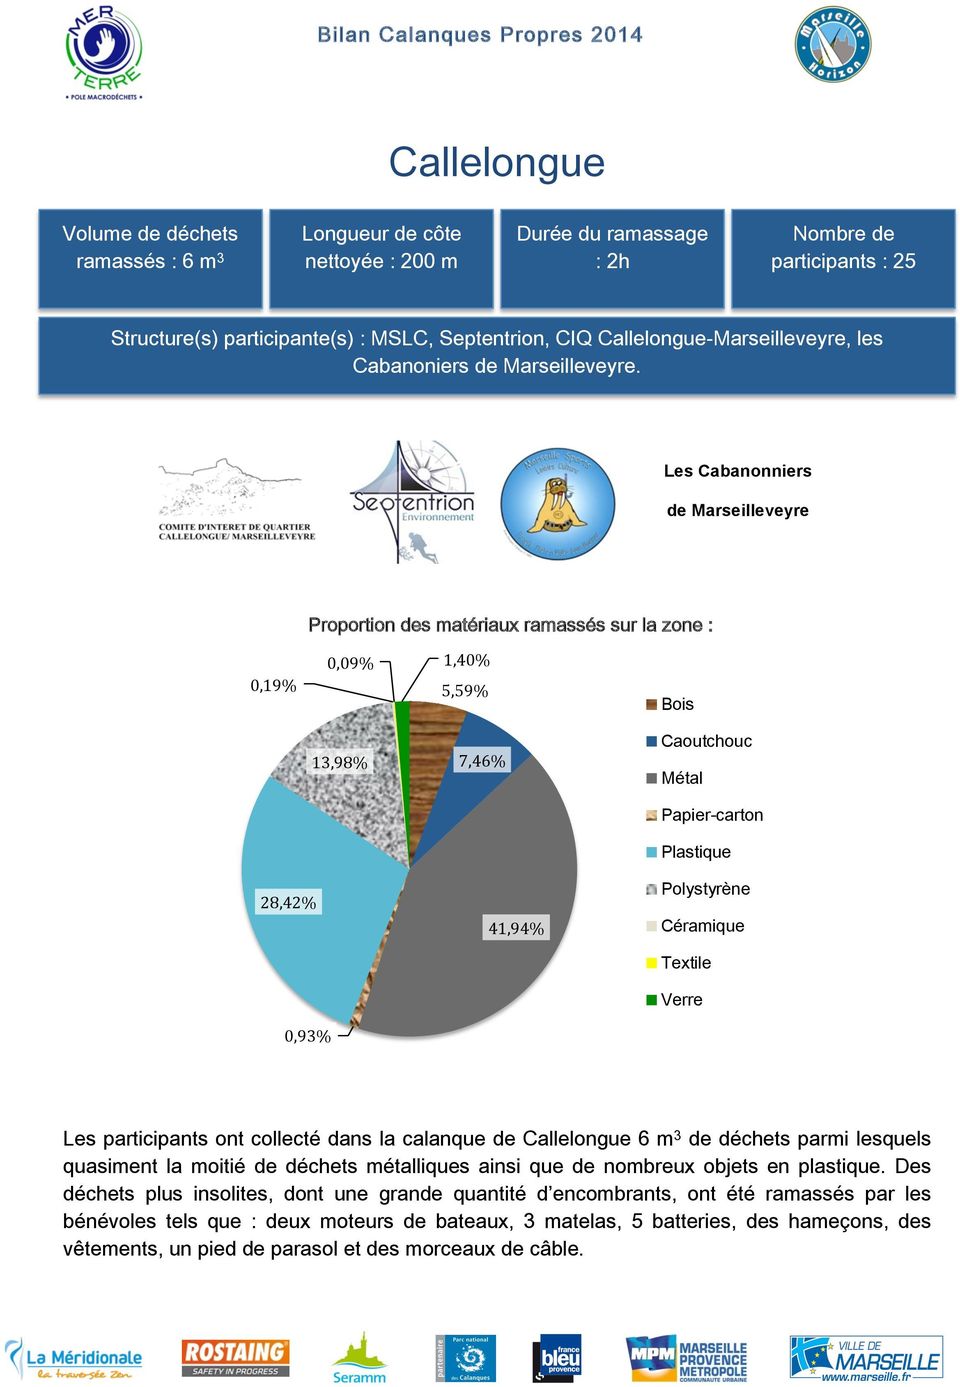 Les Cabanonniers de Marseilleveyre Proportion des matériaux ramassés sur la zone : 0,09% 0,19% 1,40% 5,59% 13,98% 7,46% Bois Caoutchouc Métal Papier-carton Plastique Polystyrène 28,42% 41,94%